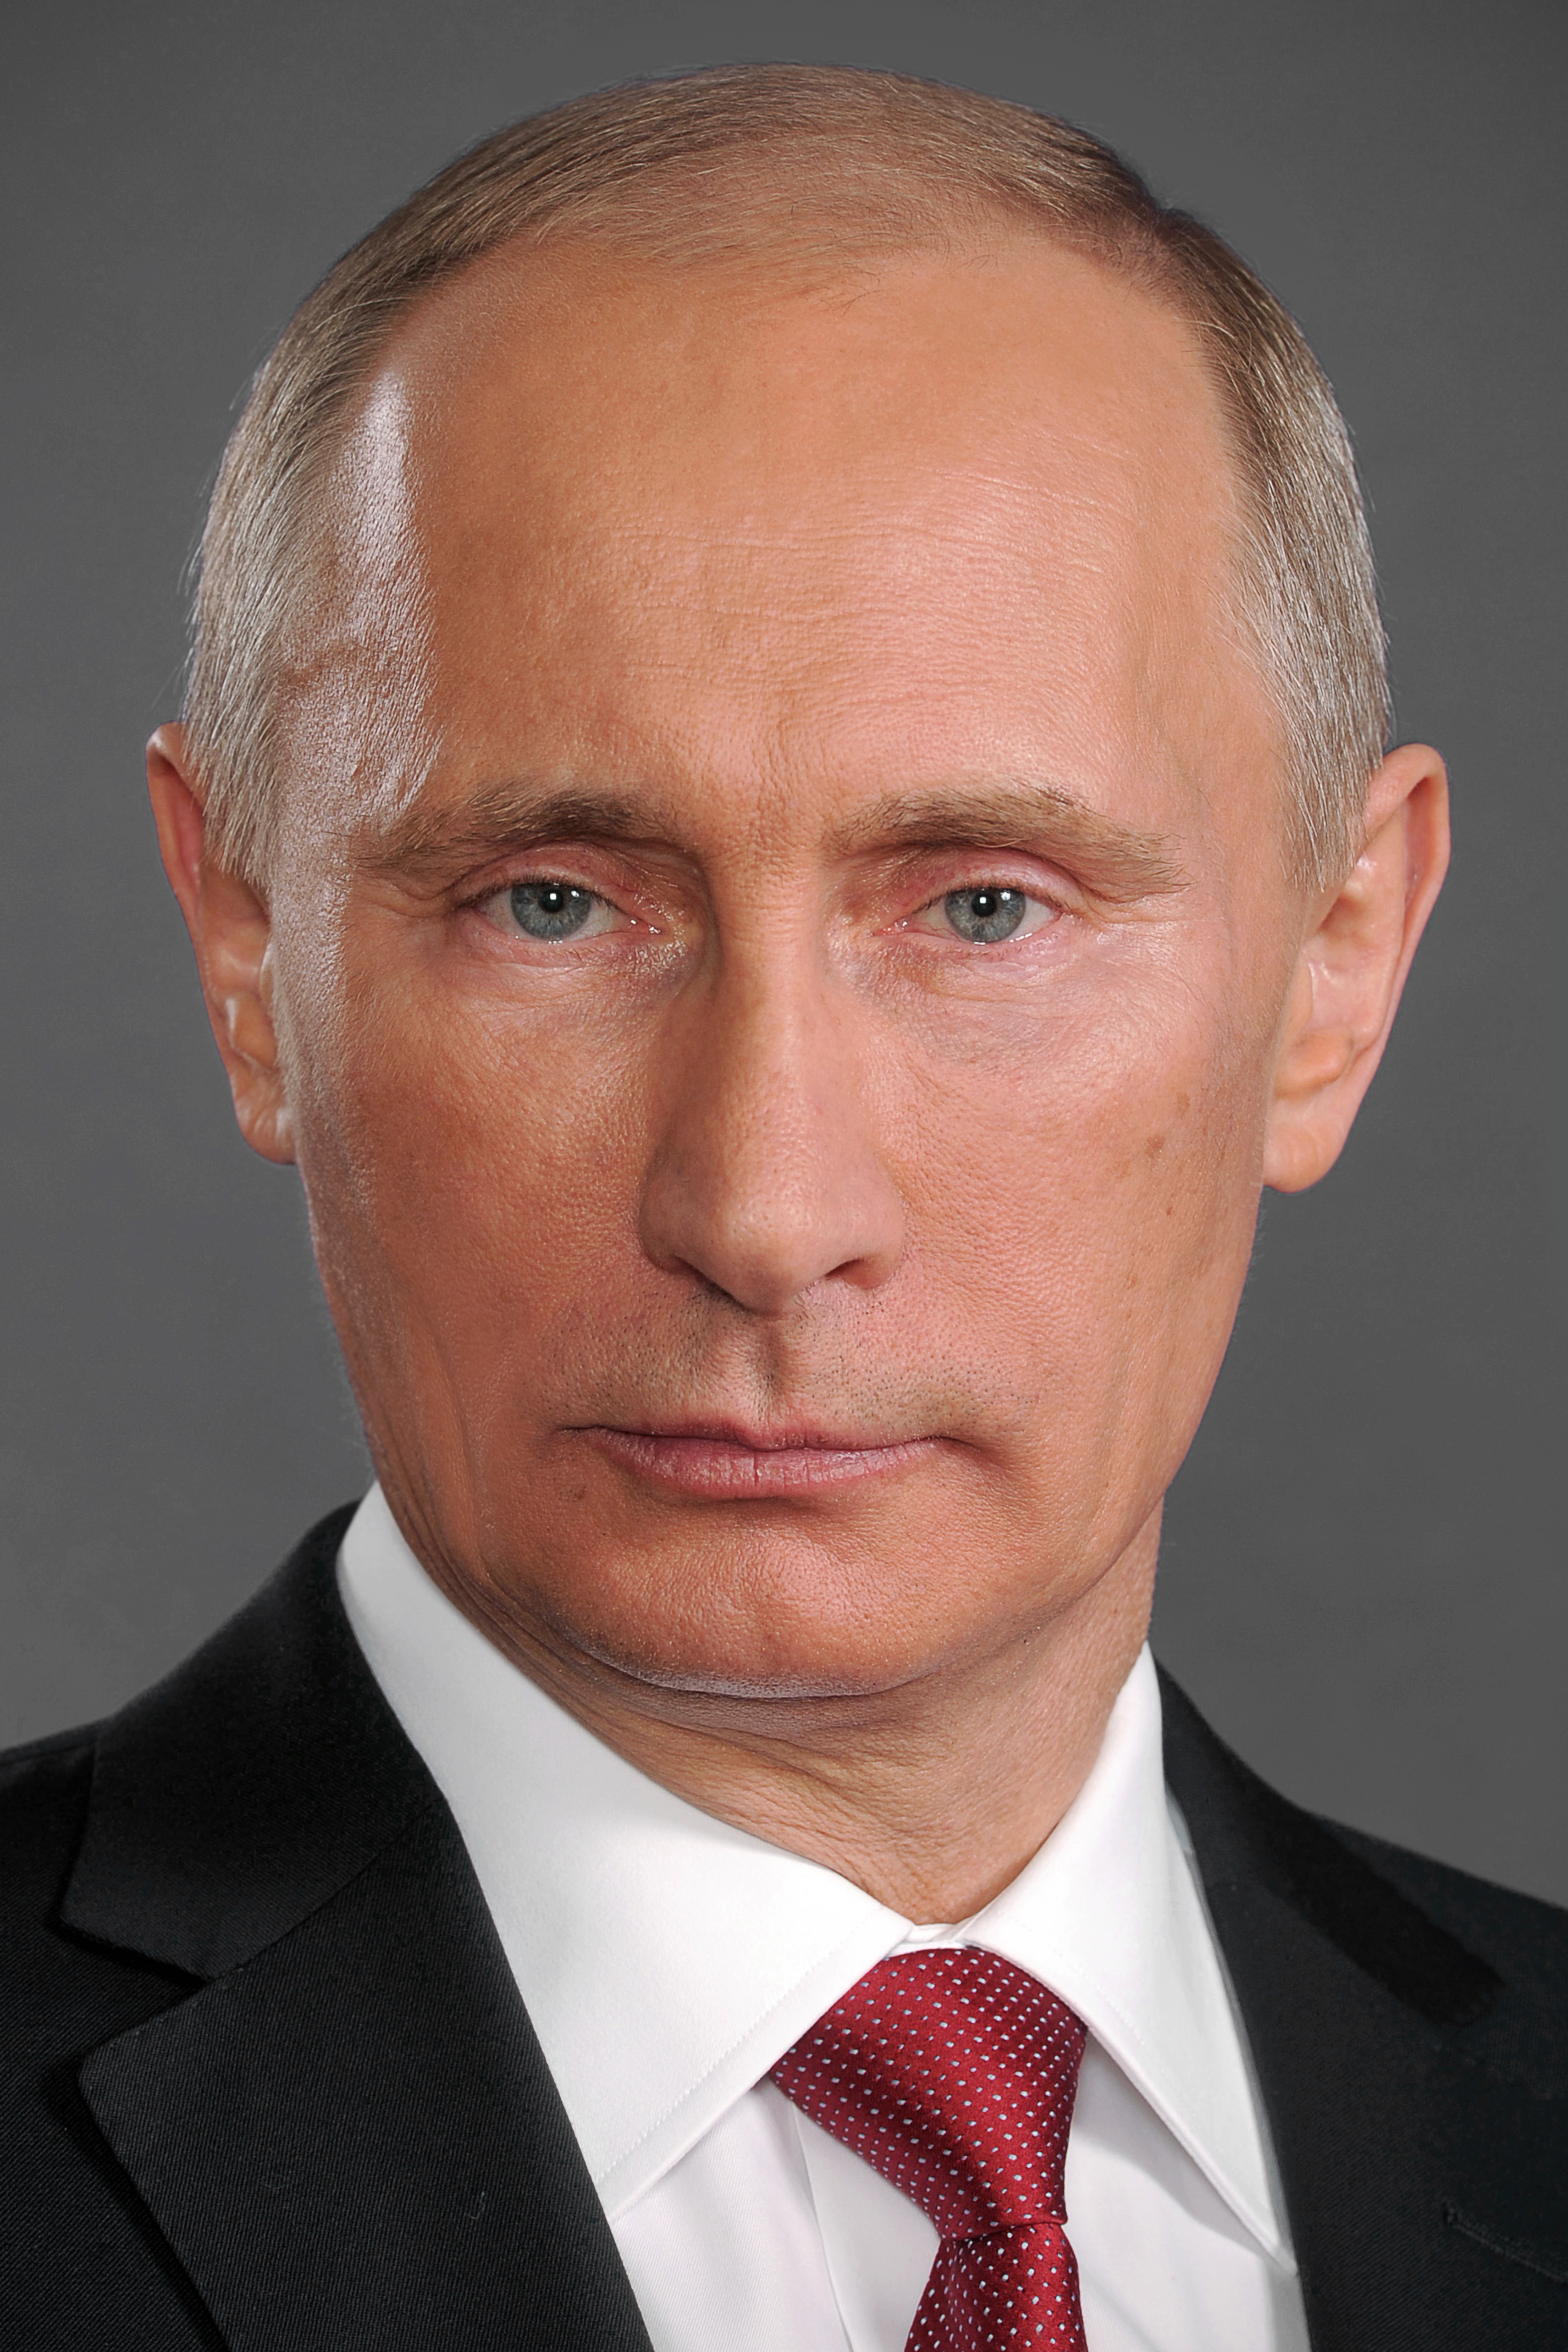 Путин Фото На Стенд